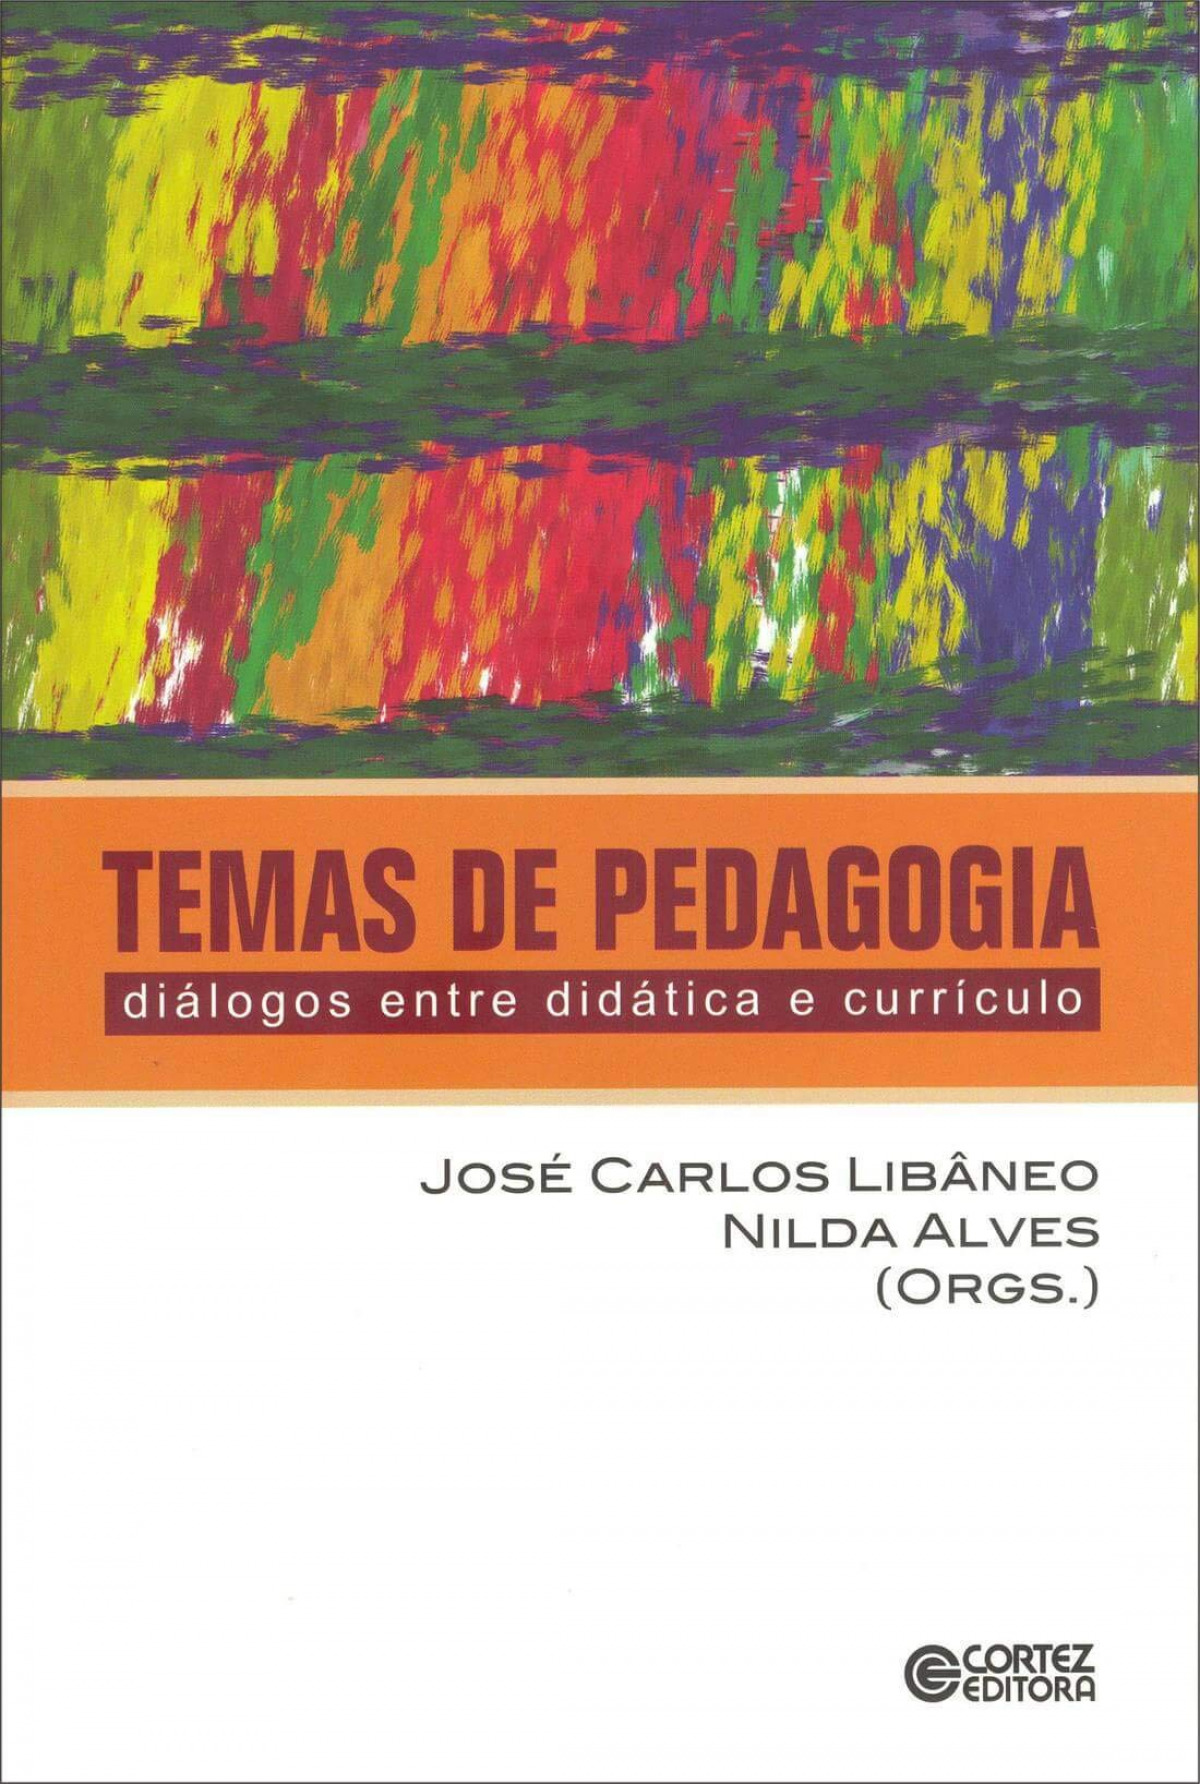 Temas de pedagogia: diálogos entre didática e currículo - Libâneo, José Carlos